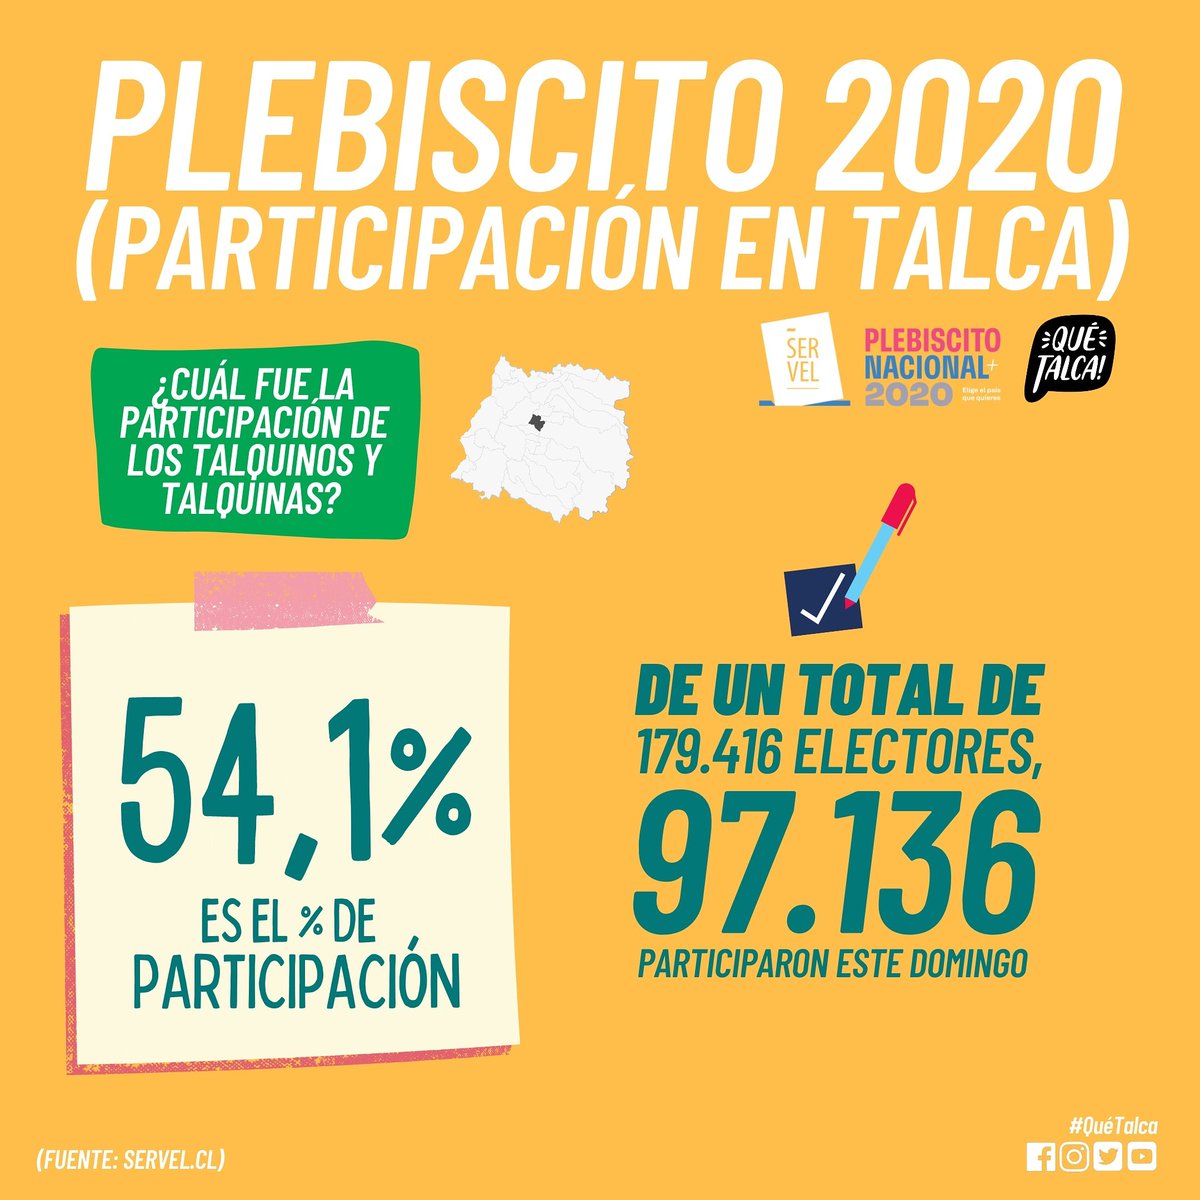 #Plebiscito2020 🗳️| Más de 97.000 personas participaron de la votación del domingo pasado, lo que corresponde a un 54,1% de participación, una de las más altas en la historia de la ciudad.

🙋‍♂️🙋‍♀️🇨🇱
(Fuente: @ServelChile)
#Talca #Maule #Chile
#ChileDespertó #Apruebo